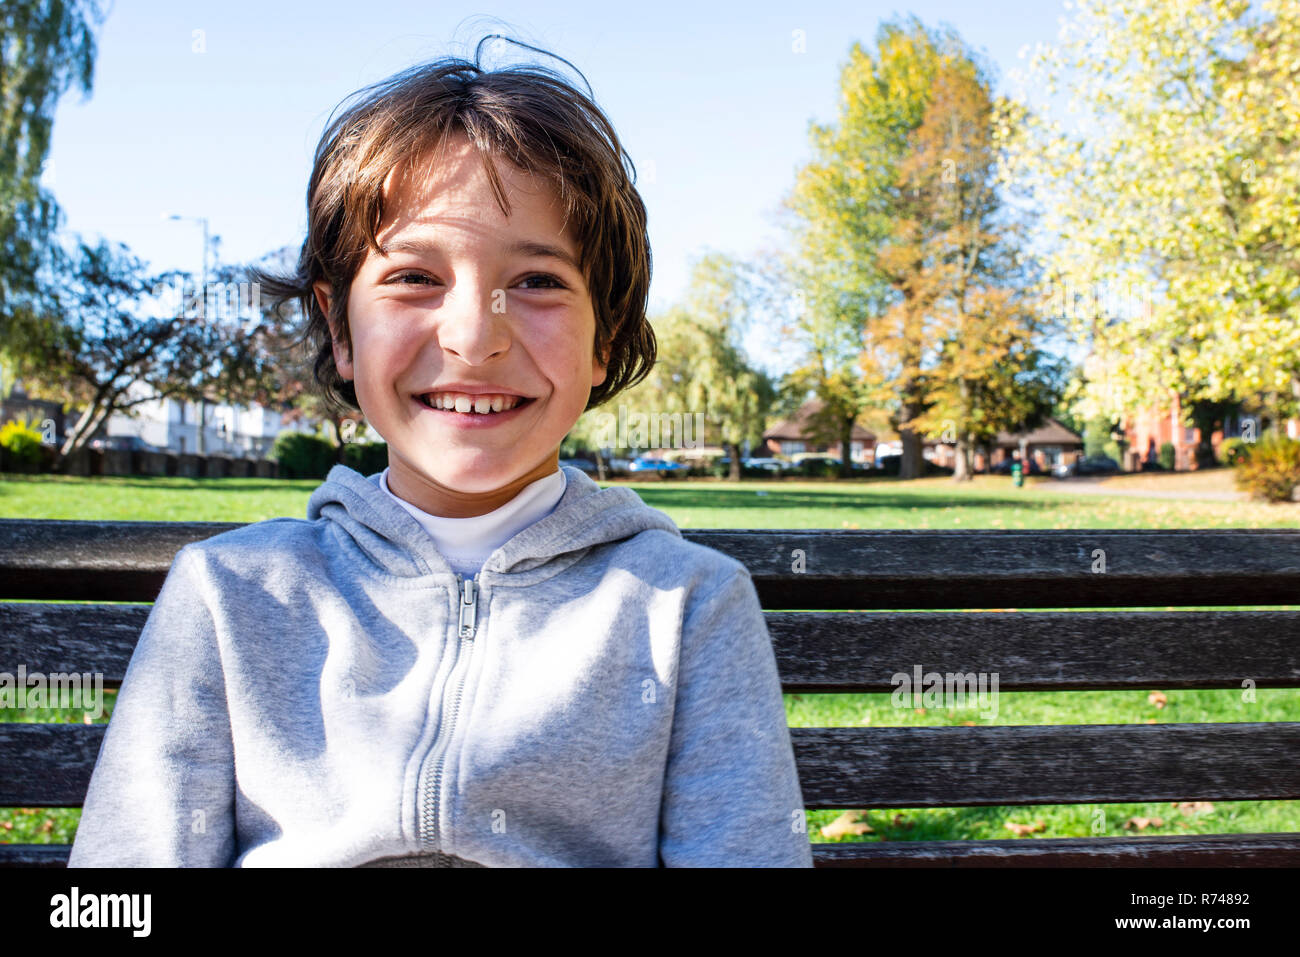 Smiling boy in park Banque D'Images